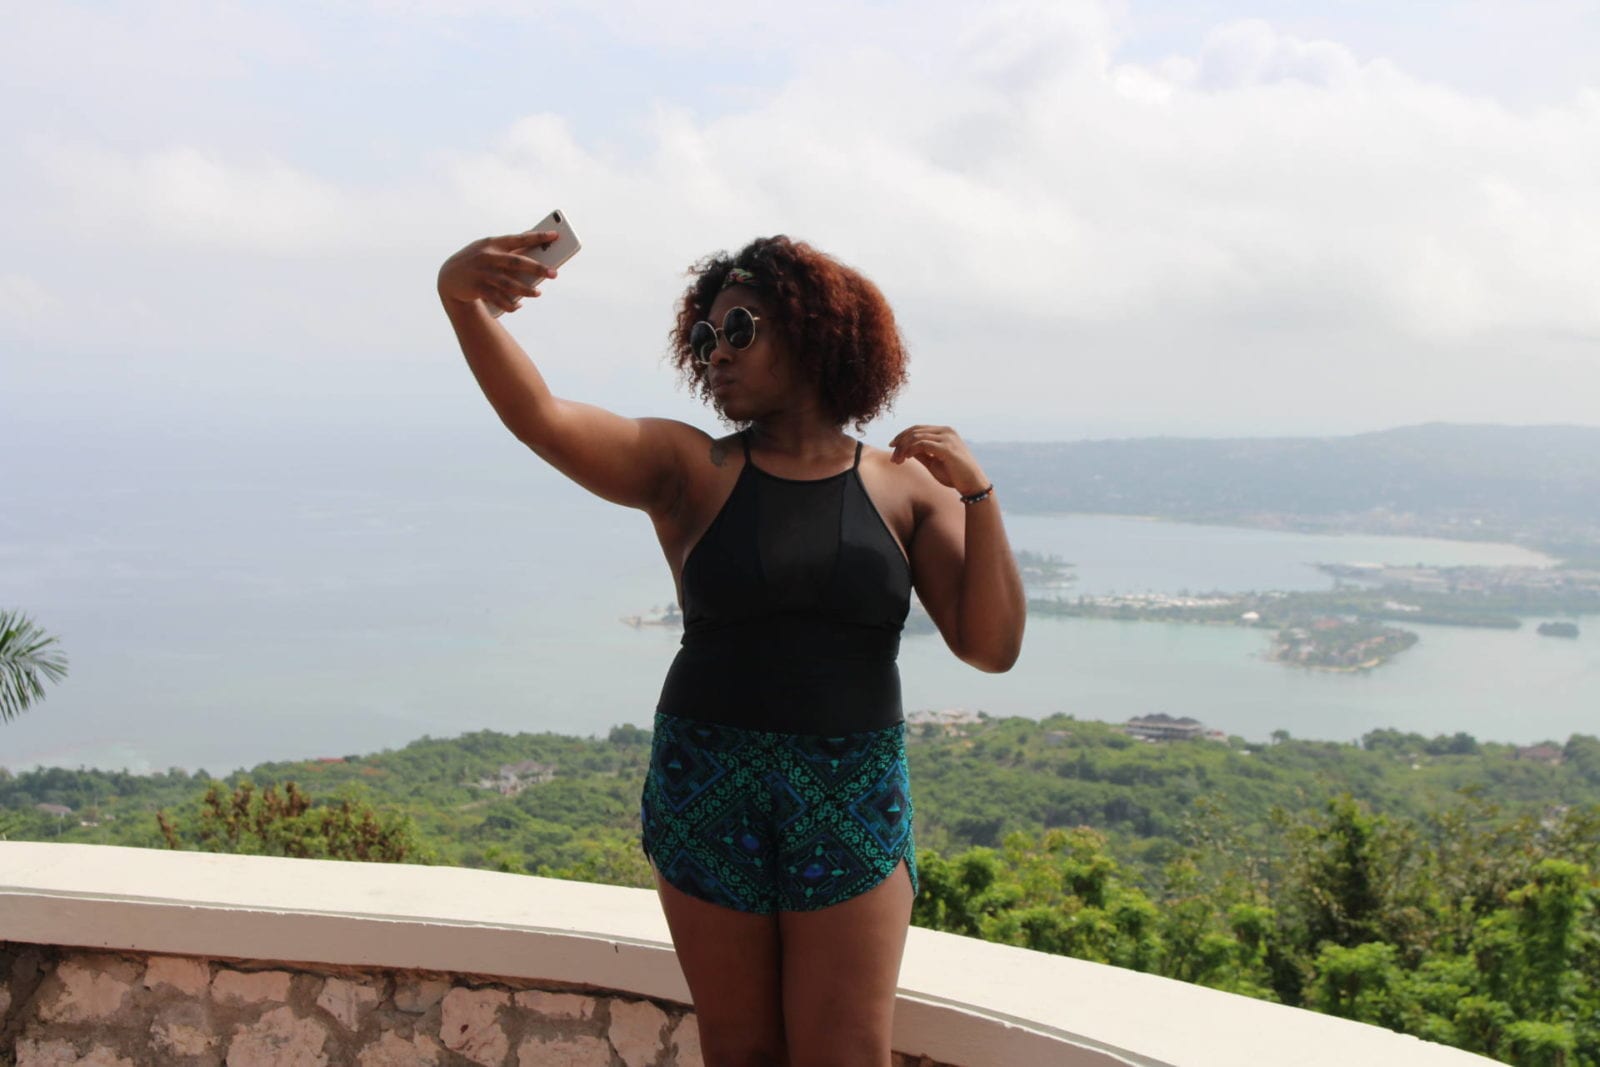 Montego Bay, Jamaica | Travel Guide